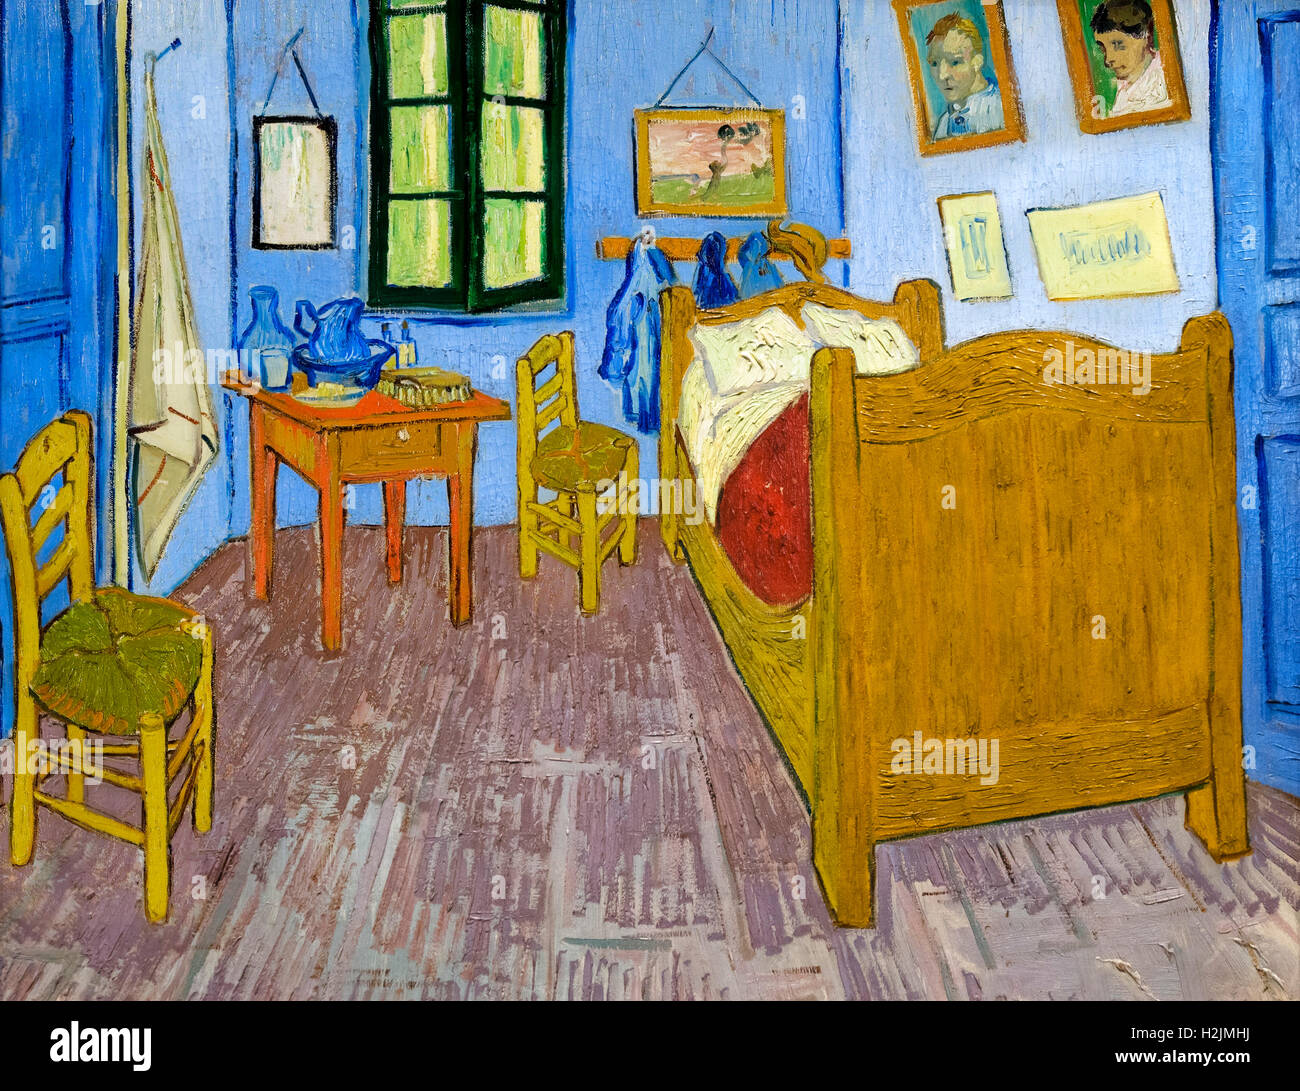 La Chambre de Vincent à Arles (la chambre de Vincent à Arles) par Vincent van Gogh (1853-1890), huile sur toile, 1889, Musée d'Orsay, Paris. Banque D'Images